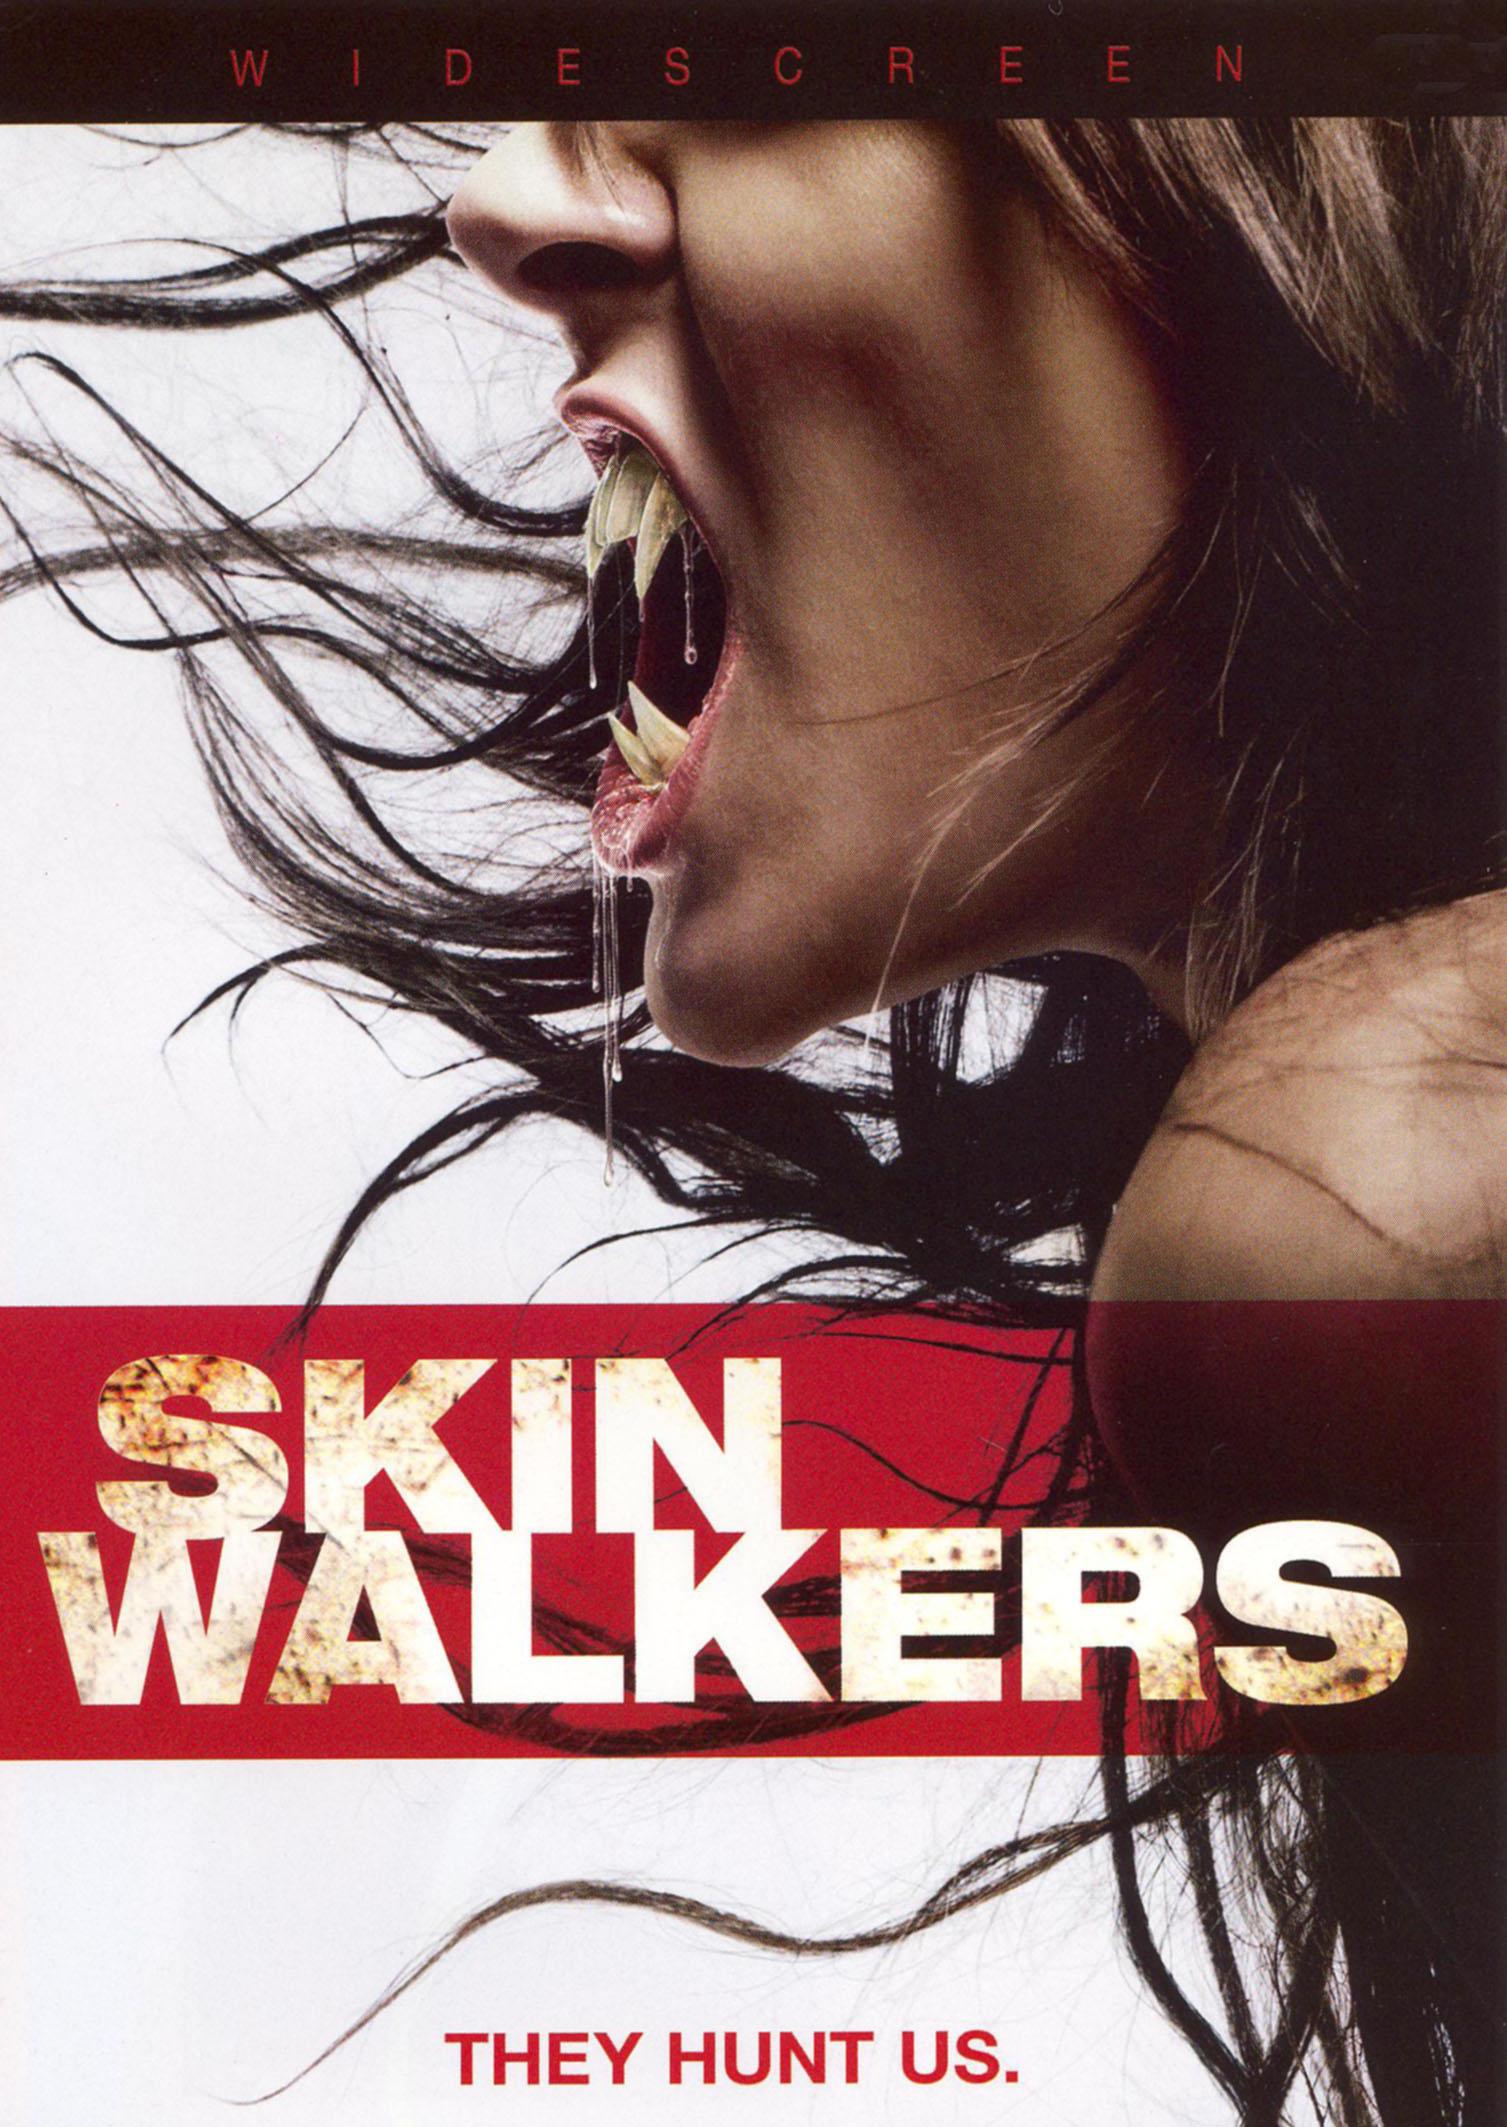 Skinwalkers (2007) Main Poster